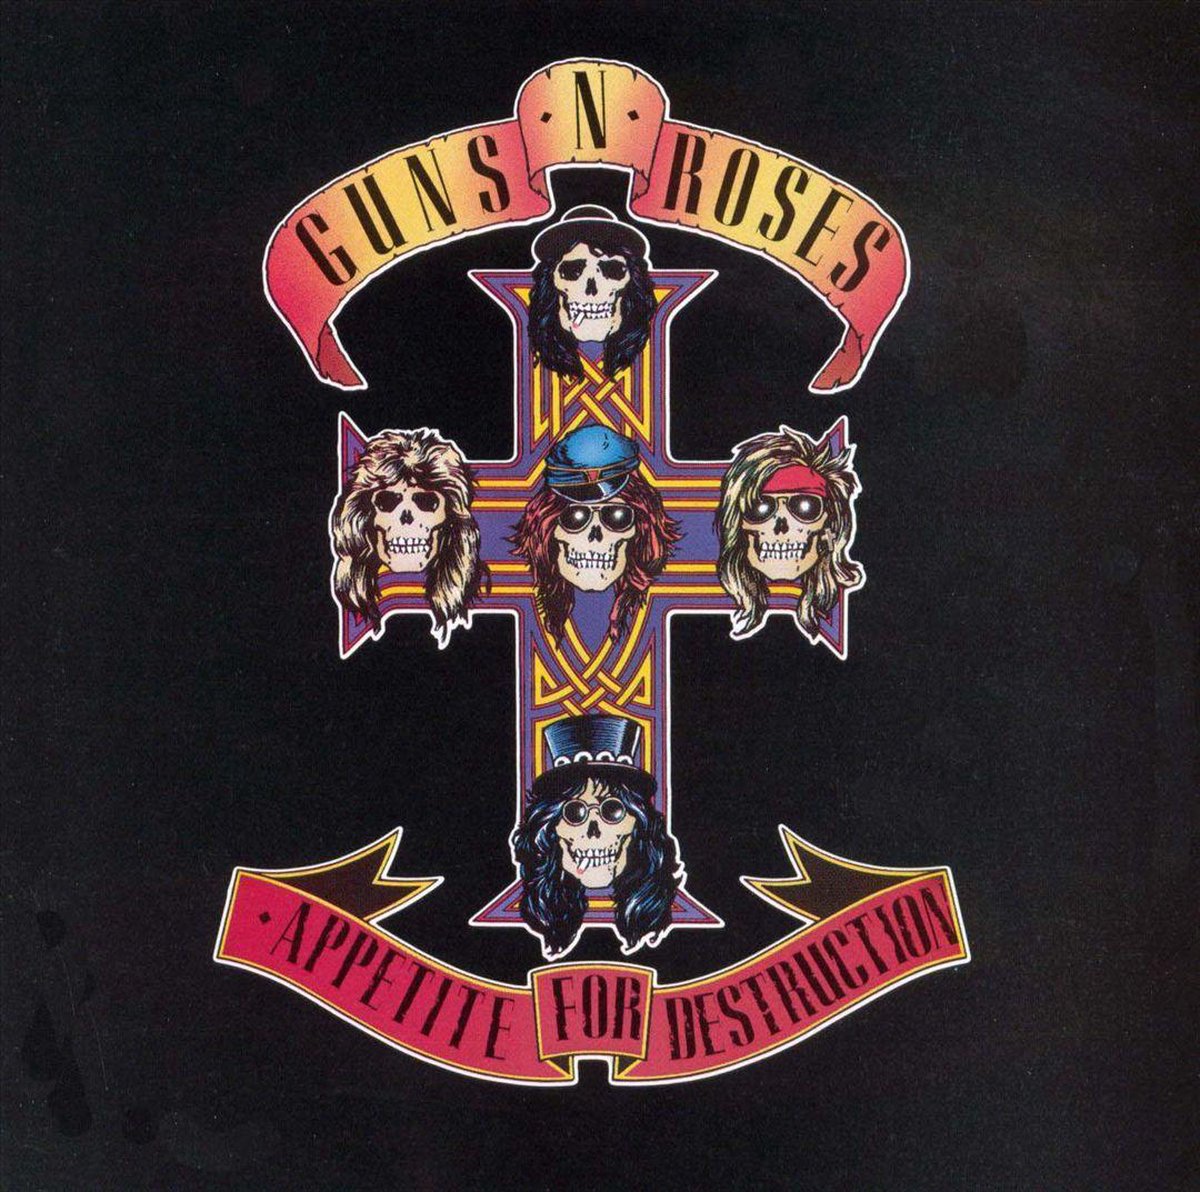 Appetite For Destruction - Guns N' Roses